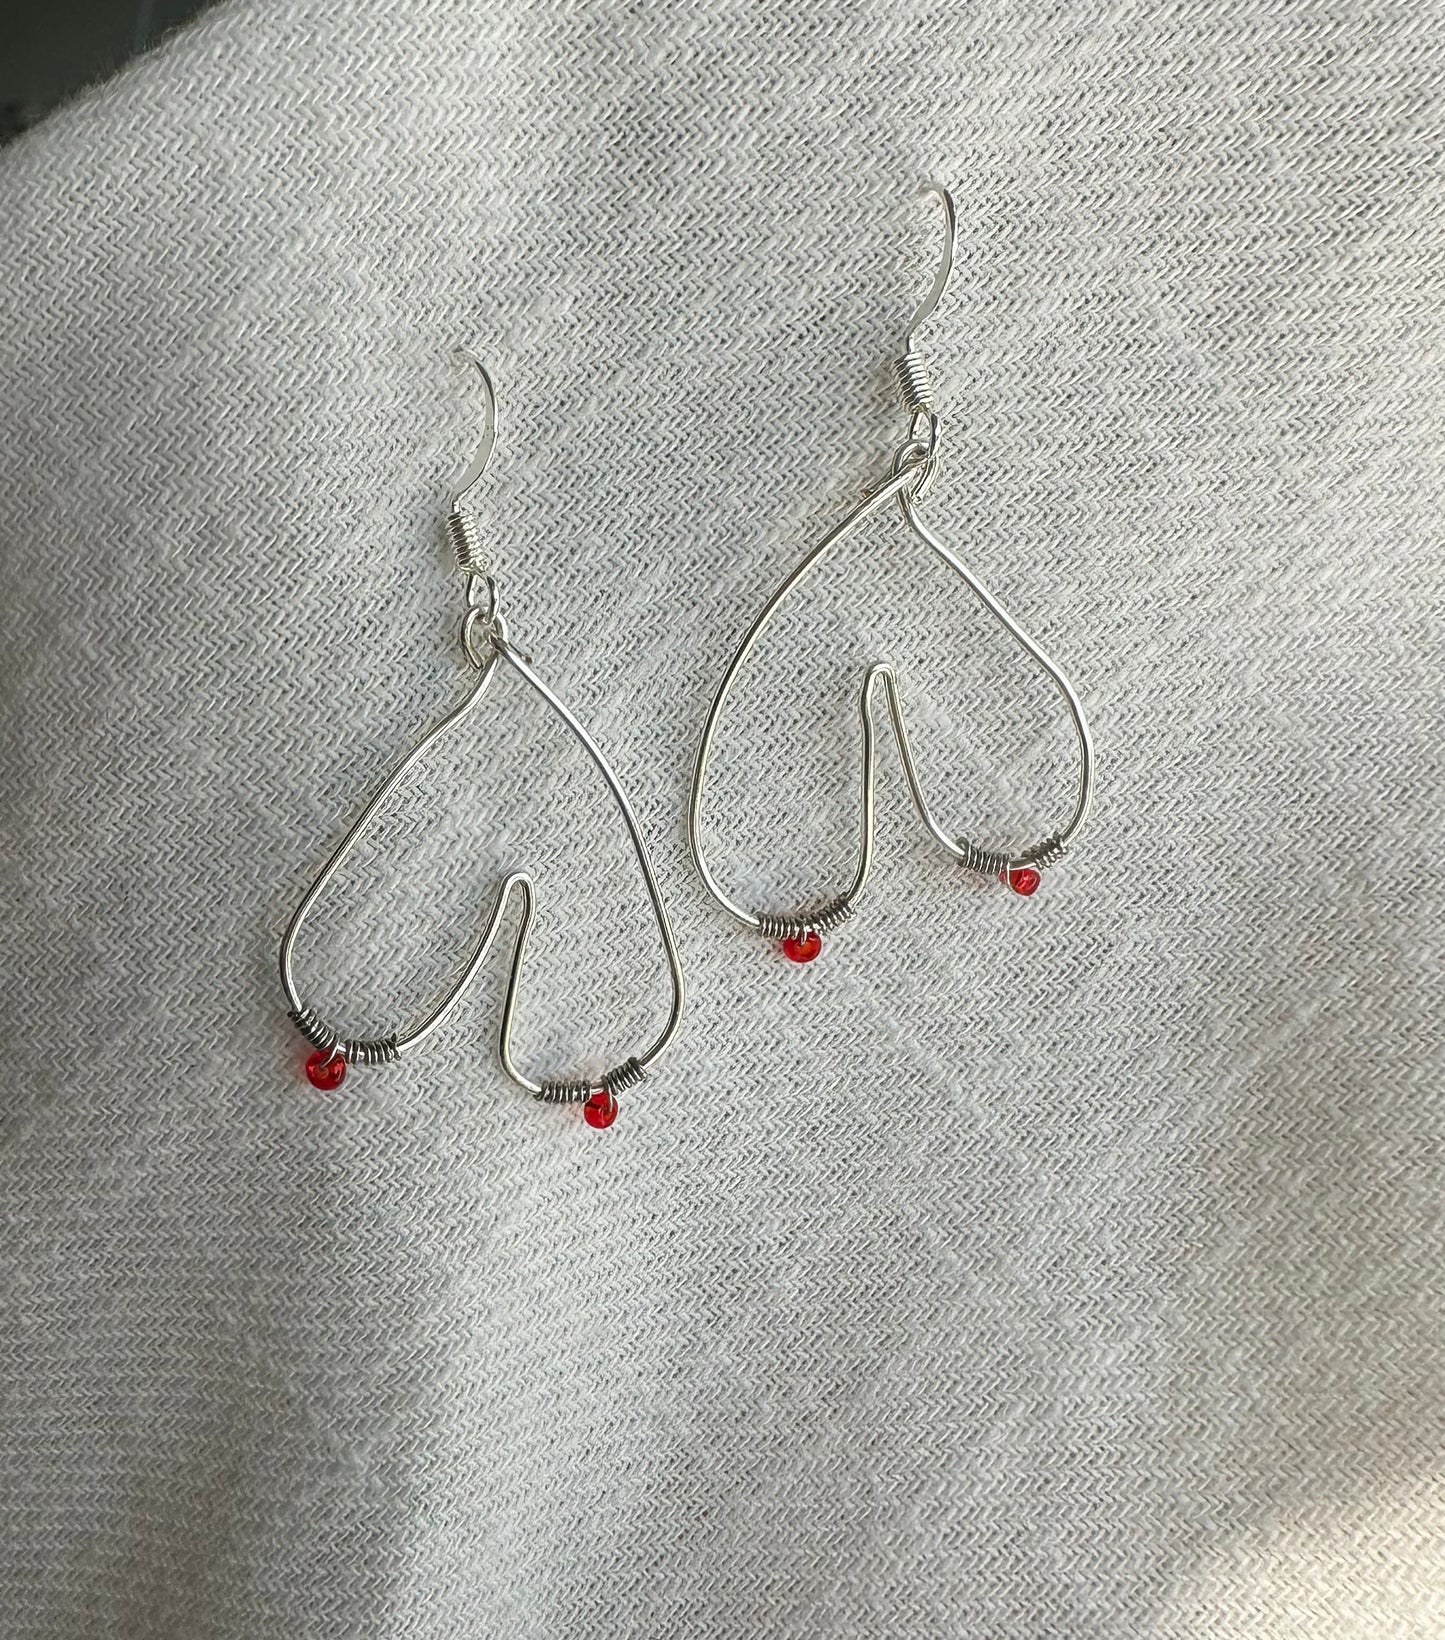 Silver Boob Earrings